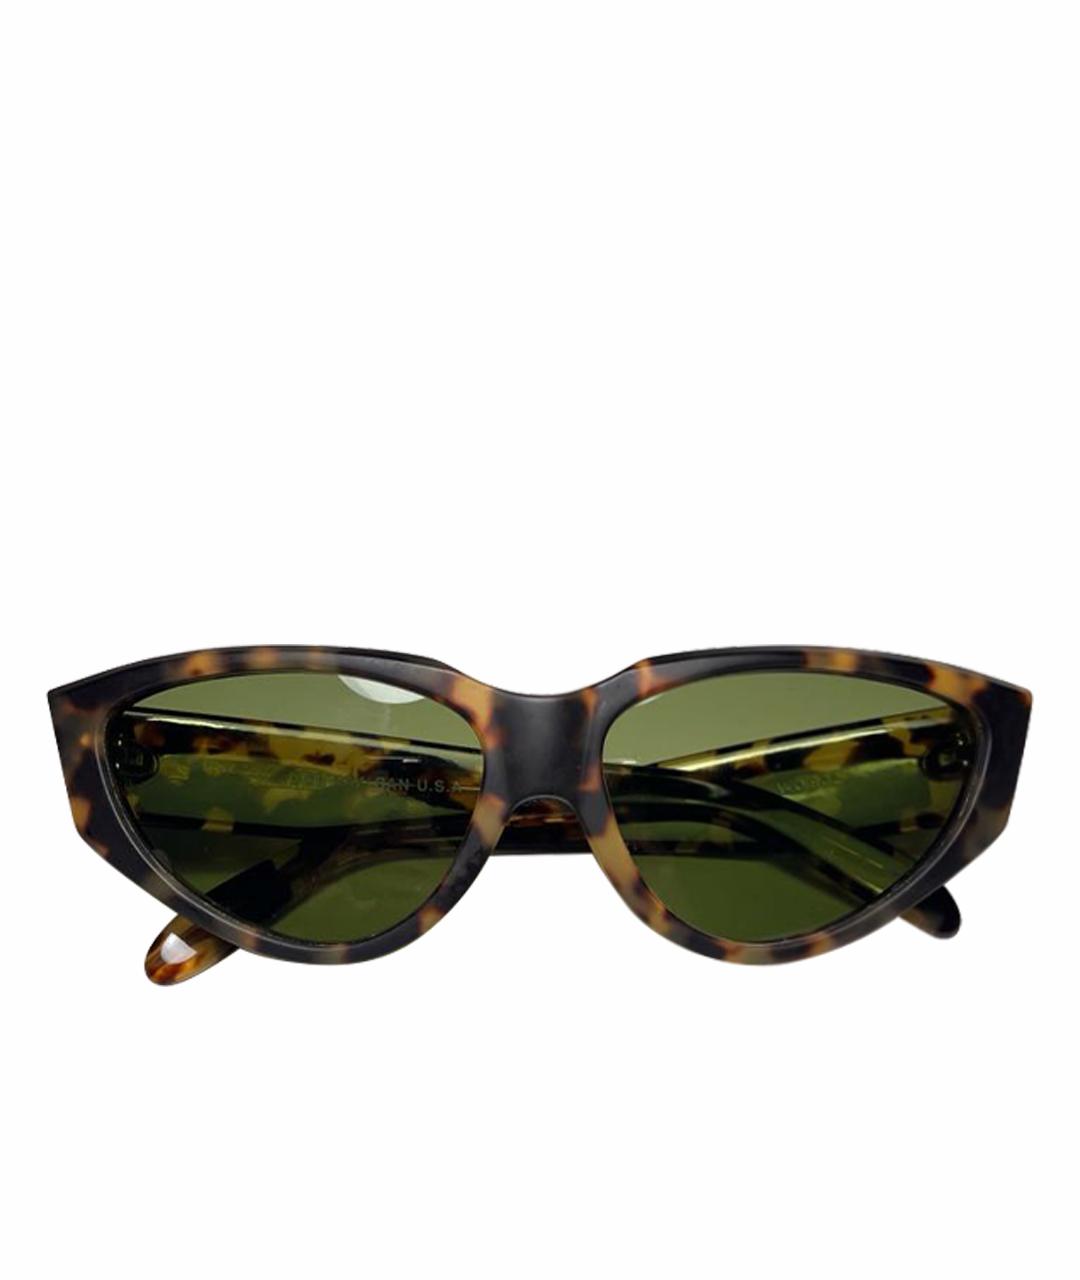 RAY BAN Коричневые пластиковые солнцезащитные очки, фото 1